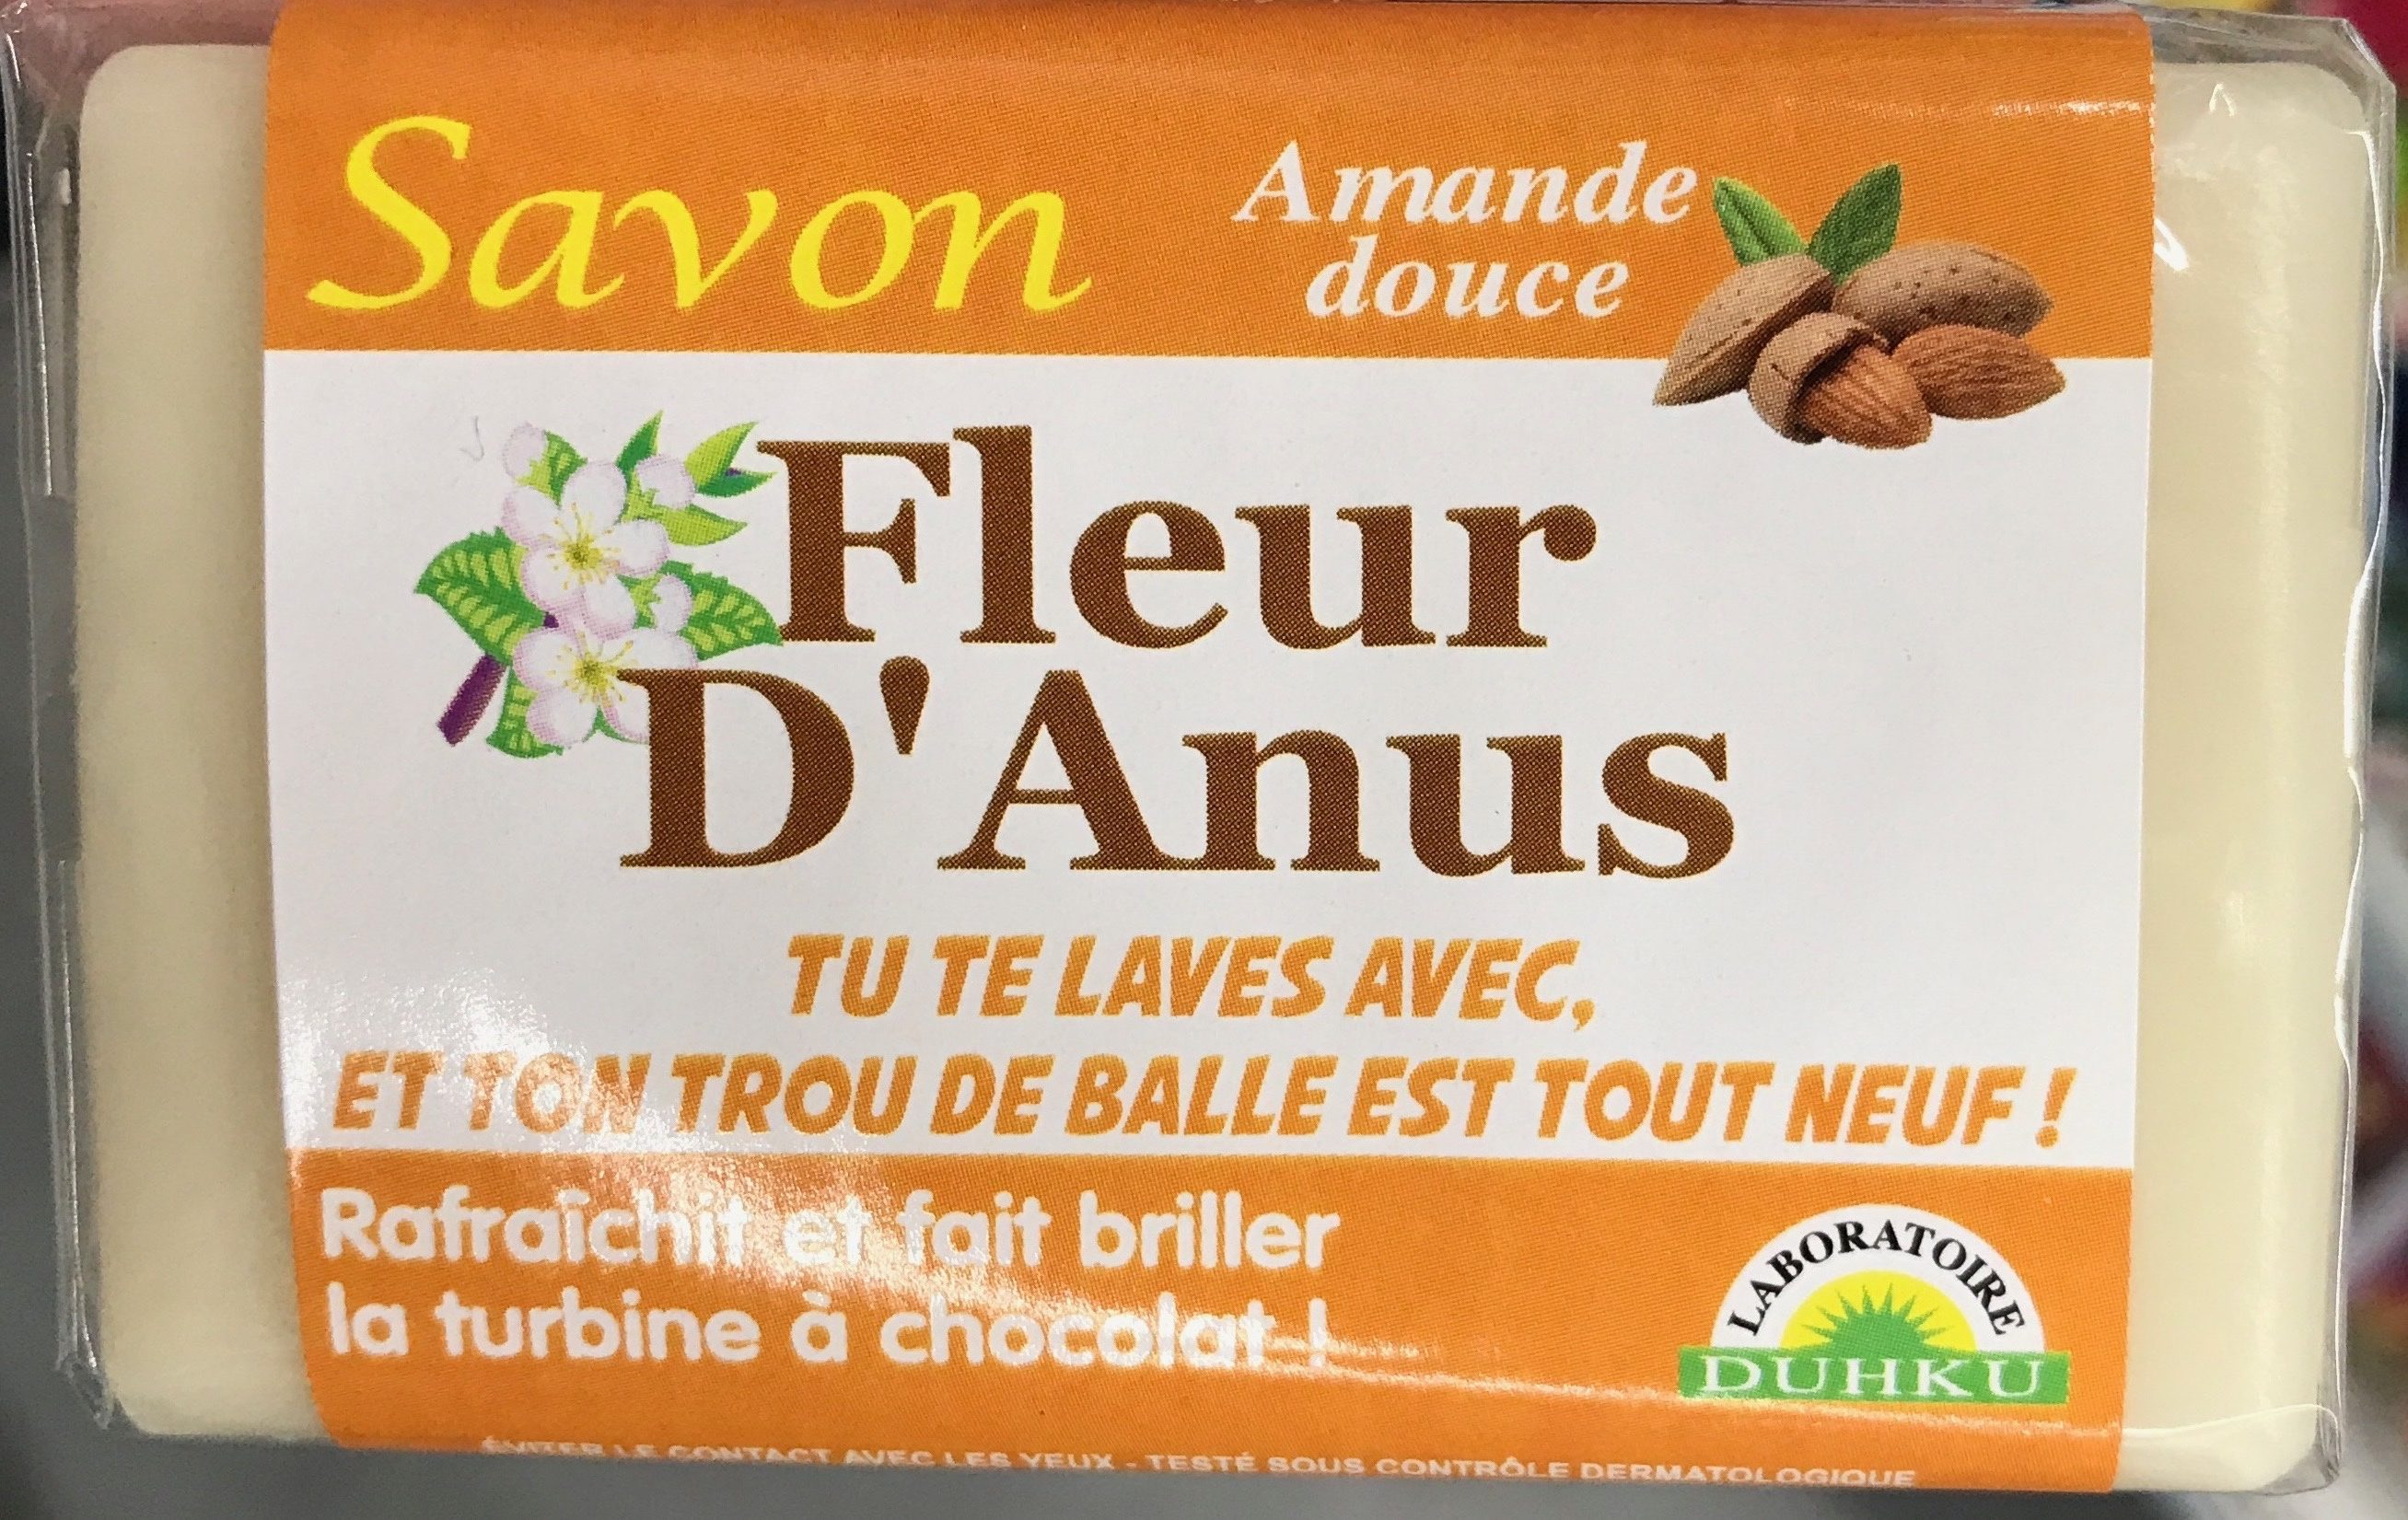 Savon Fleur d'Anus Amande douce - Produkt - fr